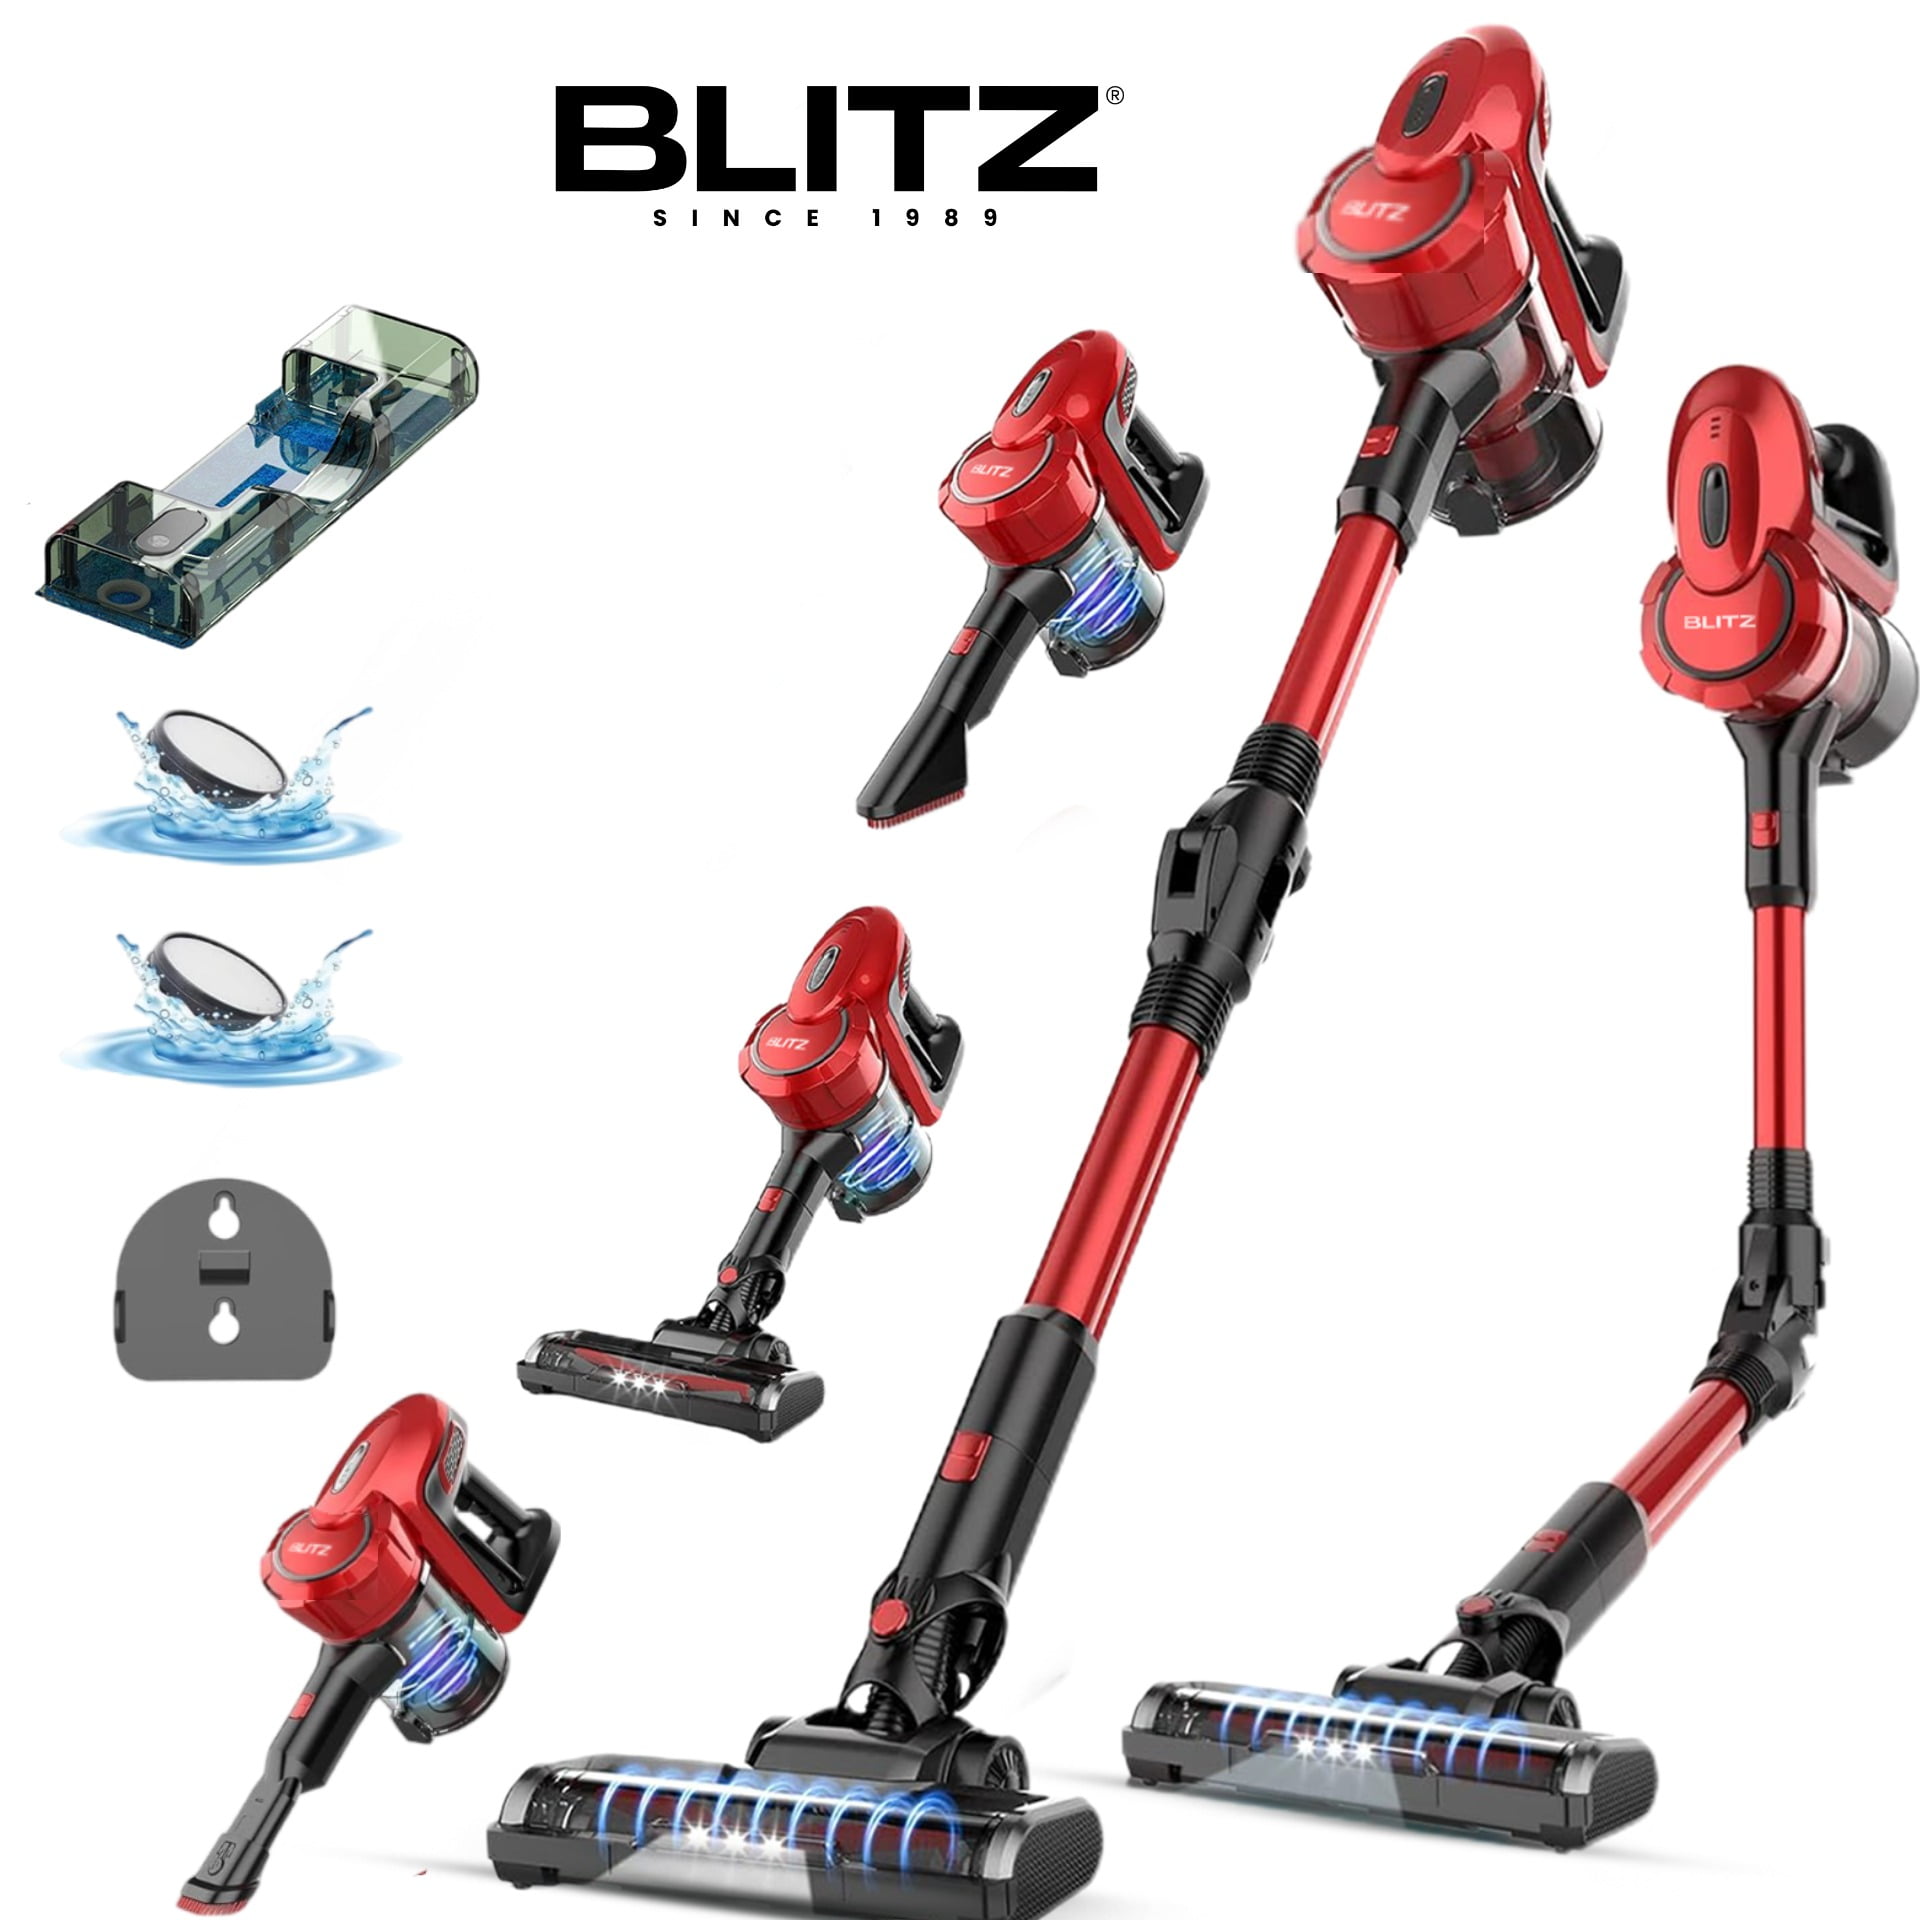 Blitz - 6en1 Aspirateur sans fil multifonction Humide Sec pour maison et voiture 1500W éclairage LED et Silencieux (USA Quality)